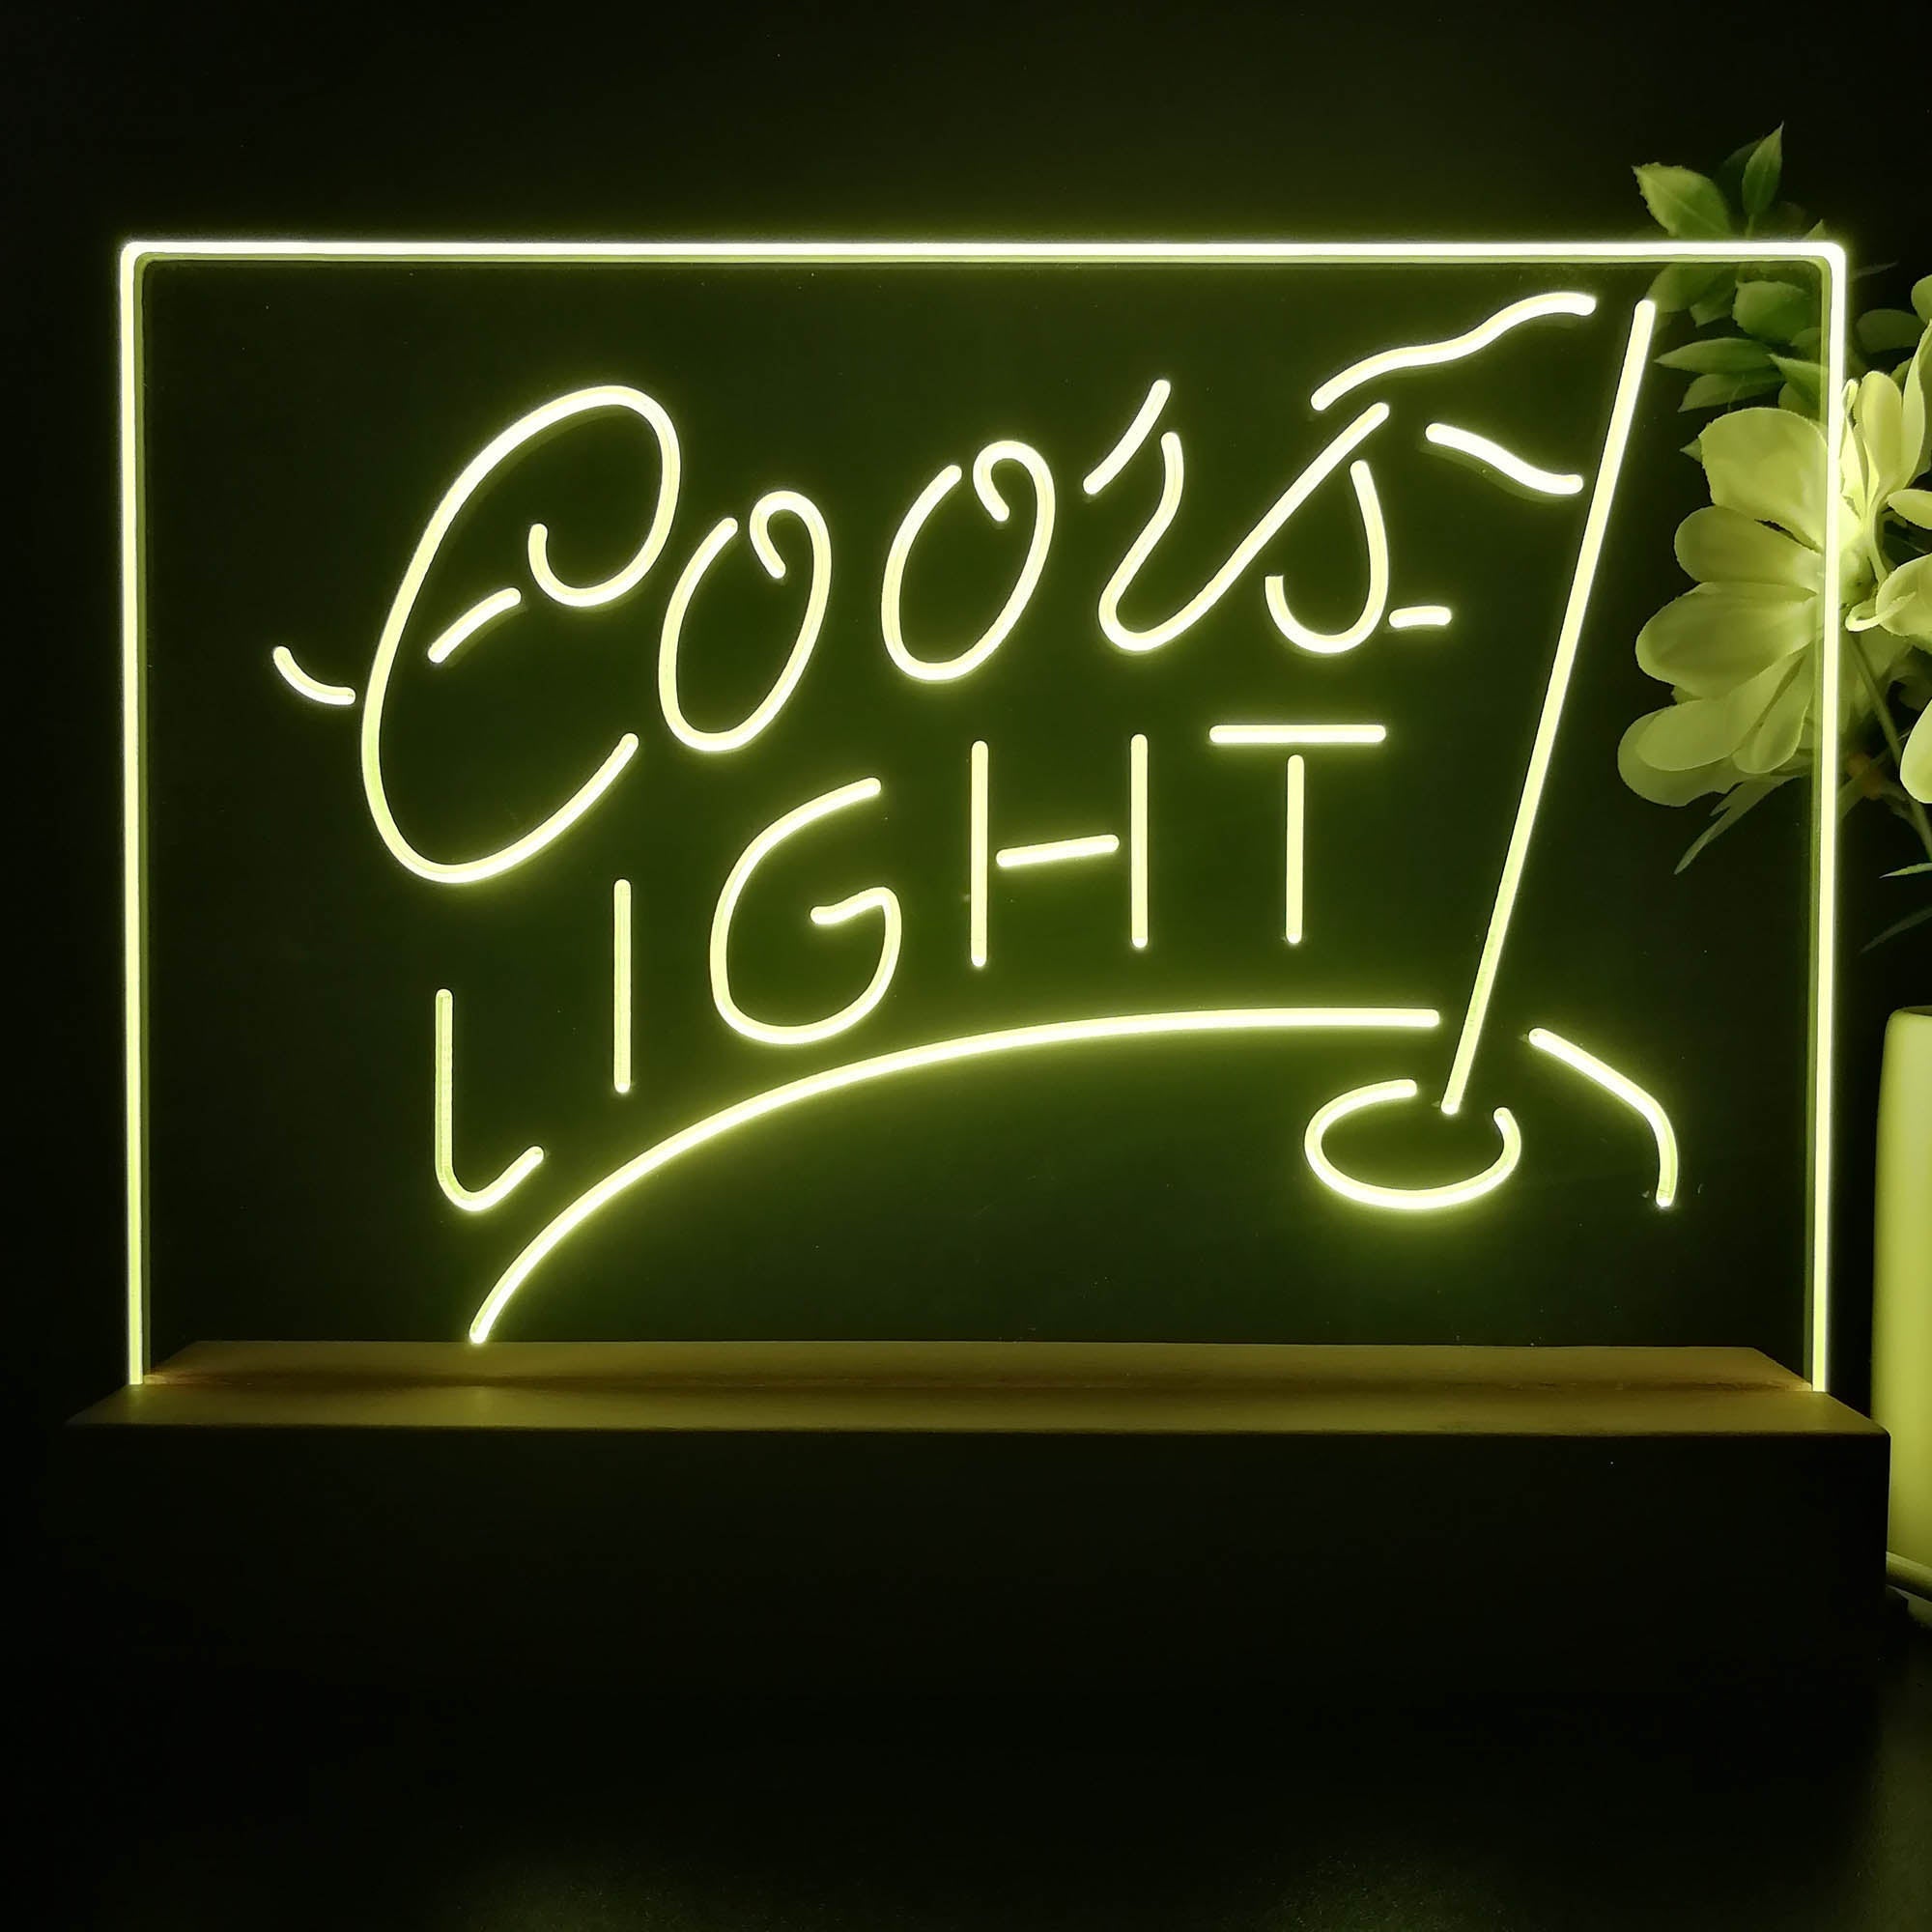 Coors Light Golf Neon Sign Pub Bar Lamp